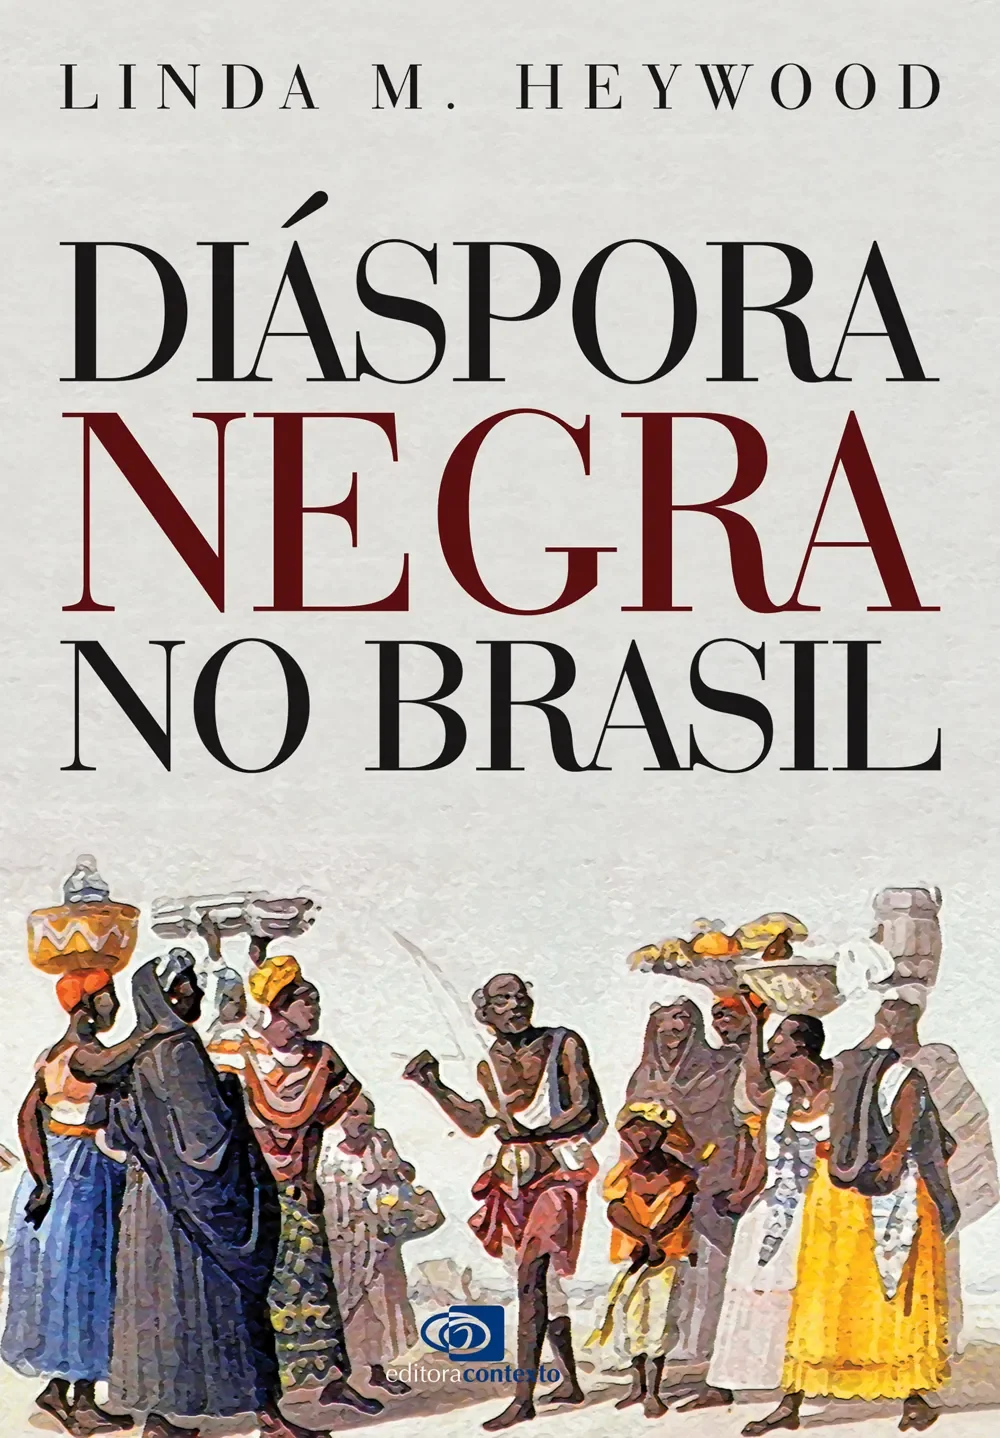 Guerras Brasileiras by Adeilson Nogueira - Ebook